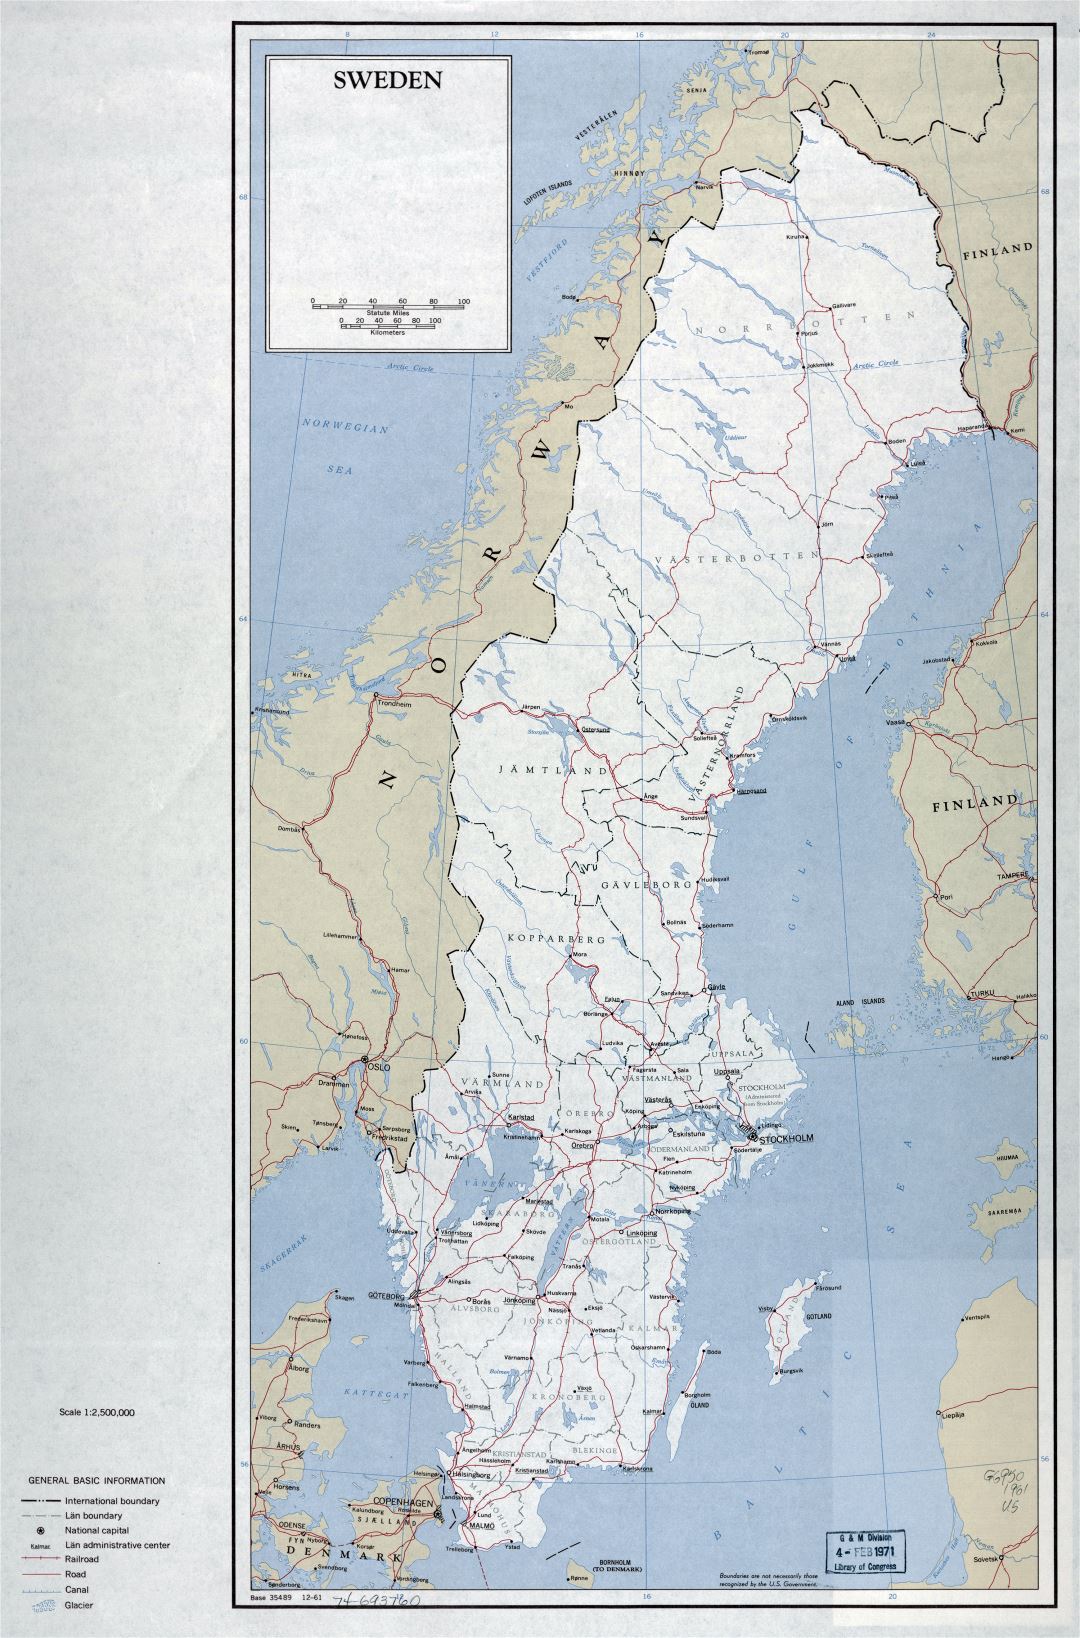 Grande detallado mapa político y administrativo de Suecia con carreteras, ferrocarriles y ciudades principales - 1961